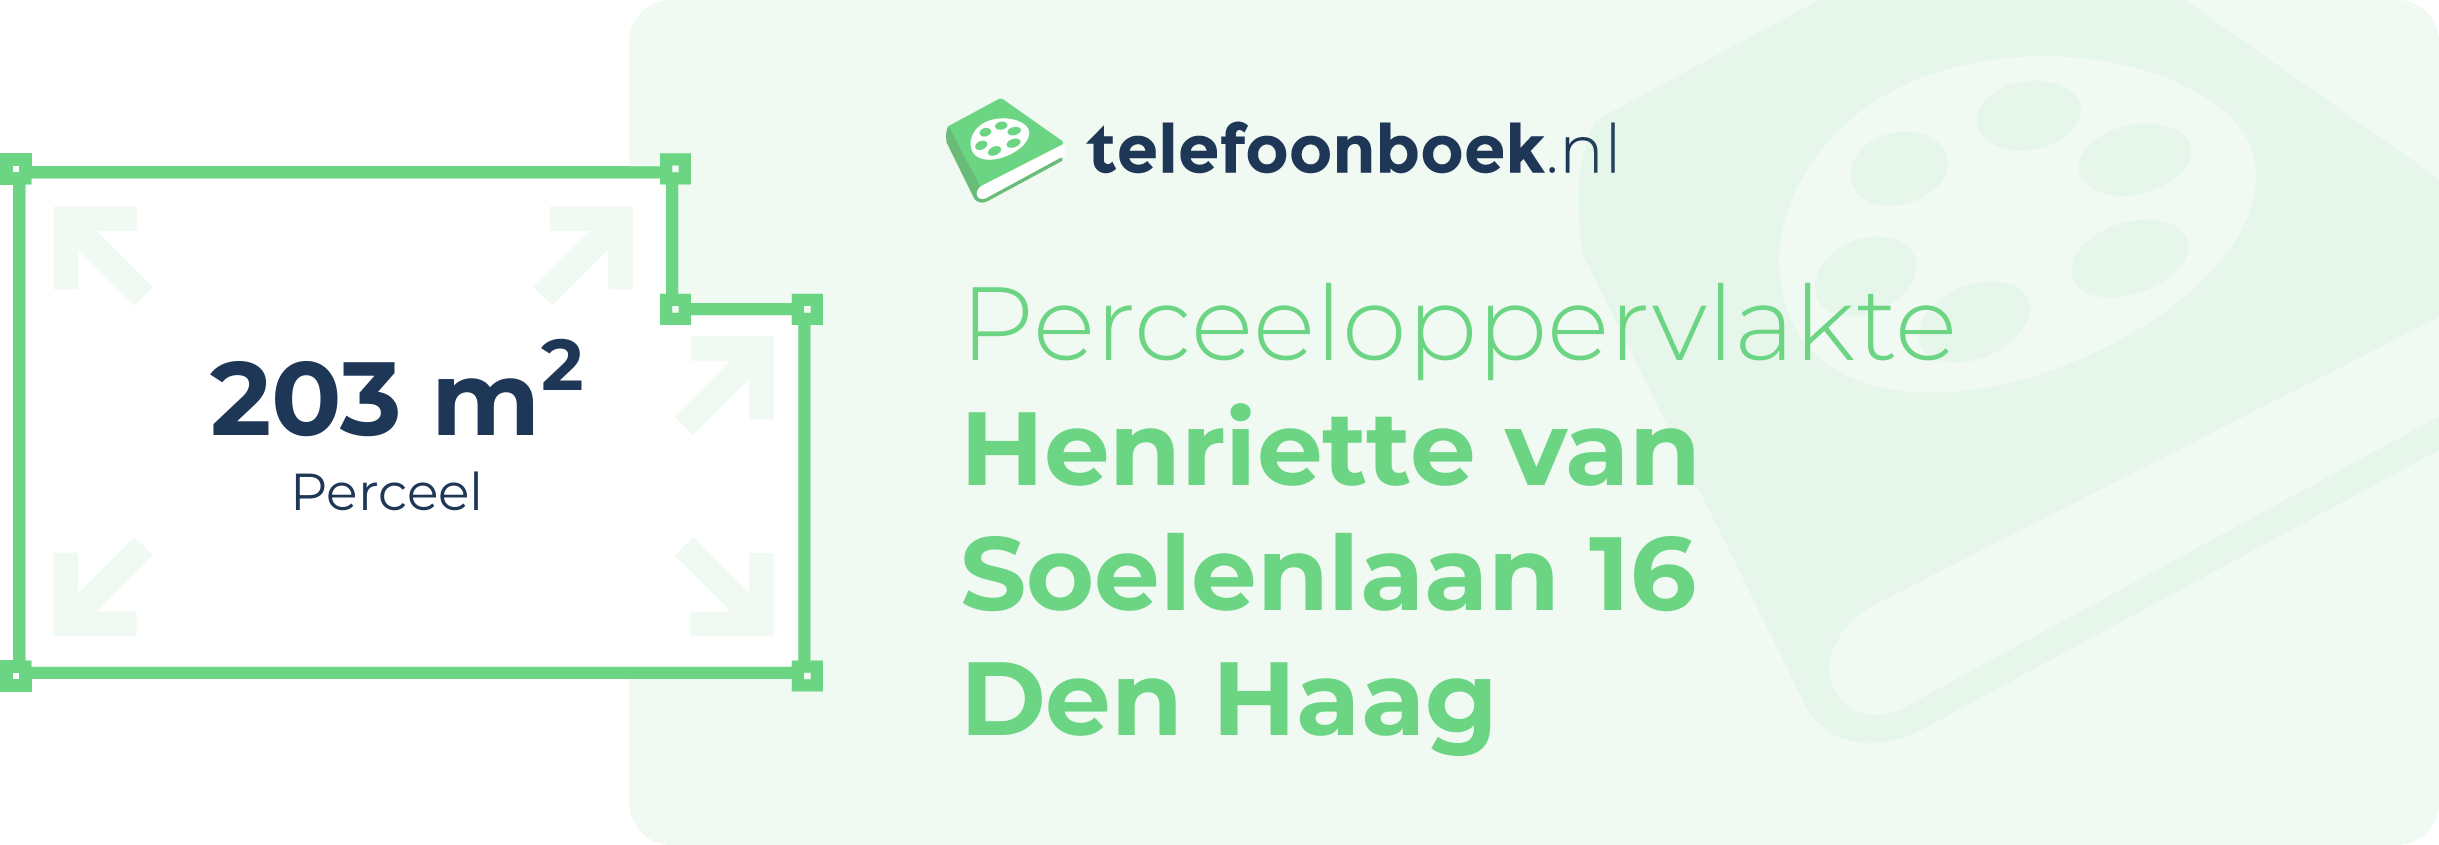 Perceeloppervlakte Henriette Van Soelenlaan 16 Den Haag